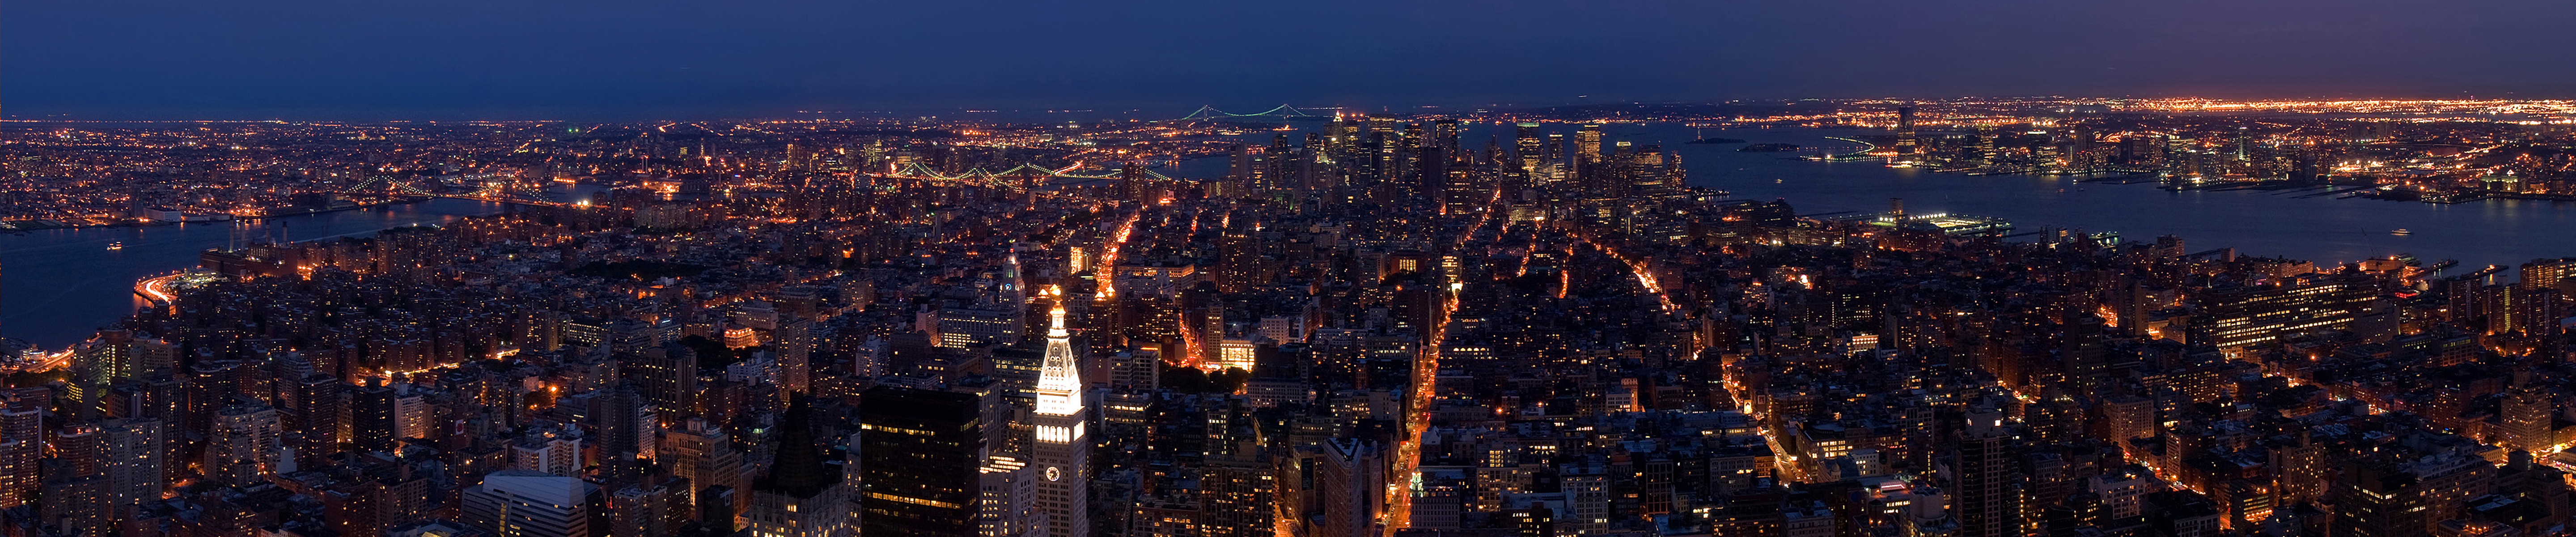 Hãy khám phá thế giới qua Hình nền phố đêm Manhattan New York miễn phí. Với ánh đèn phố lung linh, dòng người qua lại nhộn nhịp, thành phố này sẽ khiến bạn say đắm và mong muốn đến thăm một ngày không xa. Chỉ cần một bức ảnh, bạn sẽ được trải nghiệm cuộc sống đêm tuyệt vời của thành phố này.